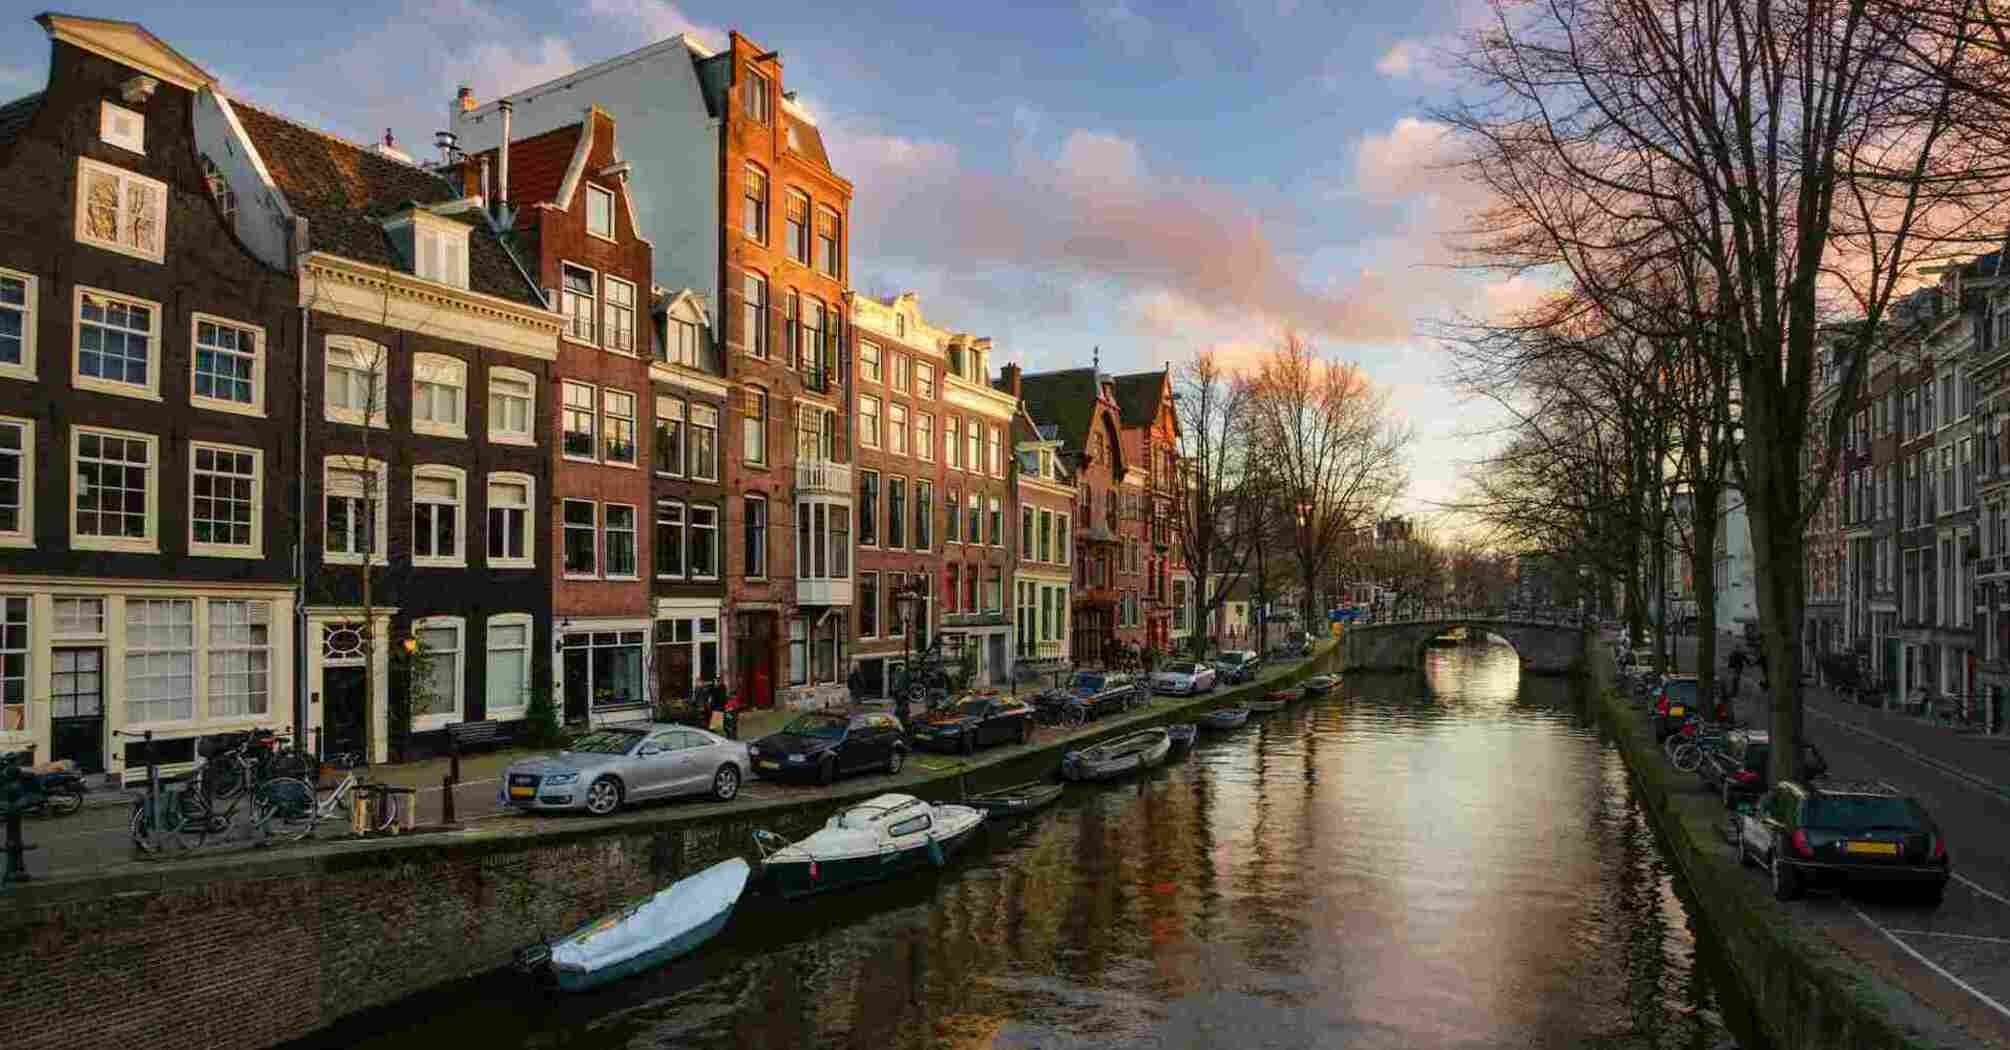 Нидерланды отменили программу ВНЖ для инвесторов